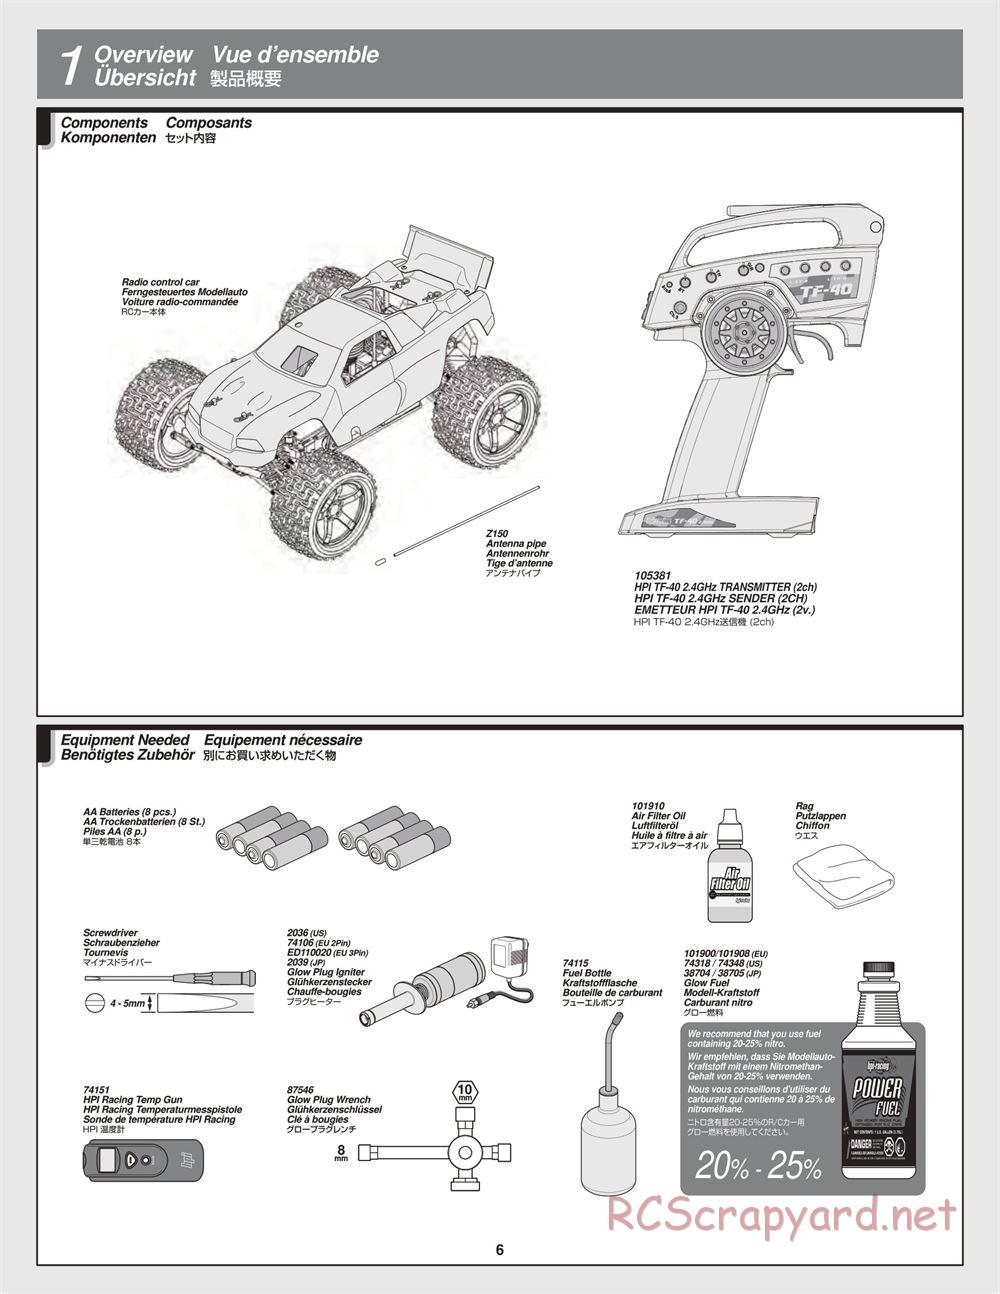 HPI - Bullet MT 3.0 - Manual - Page 6